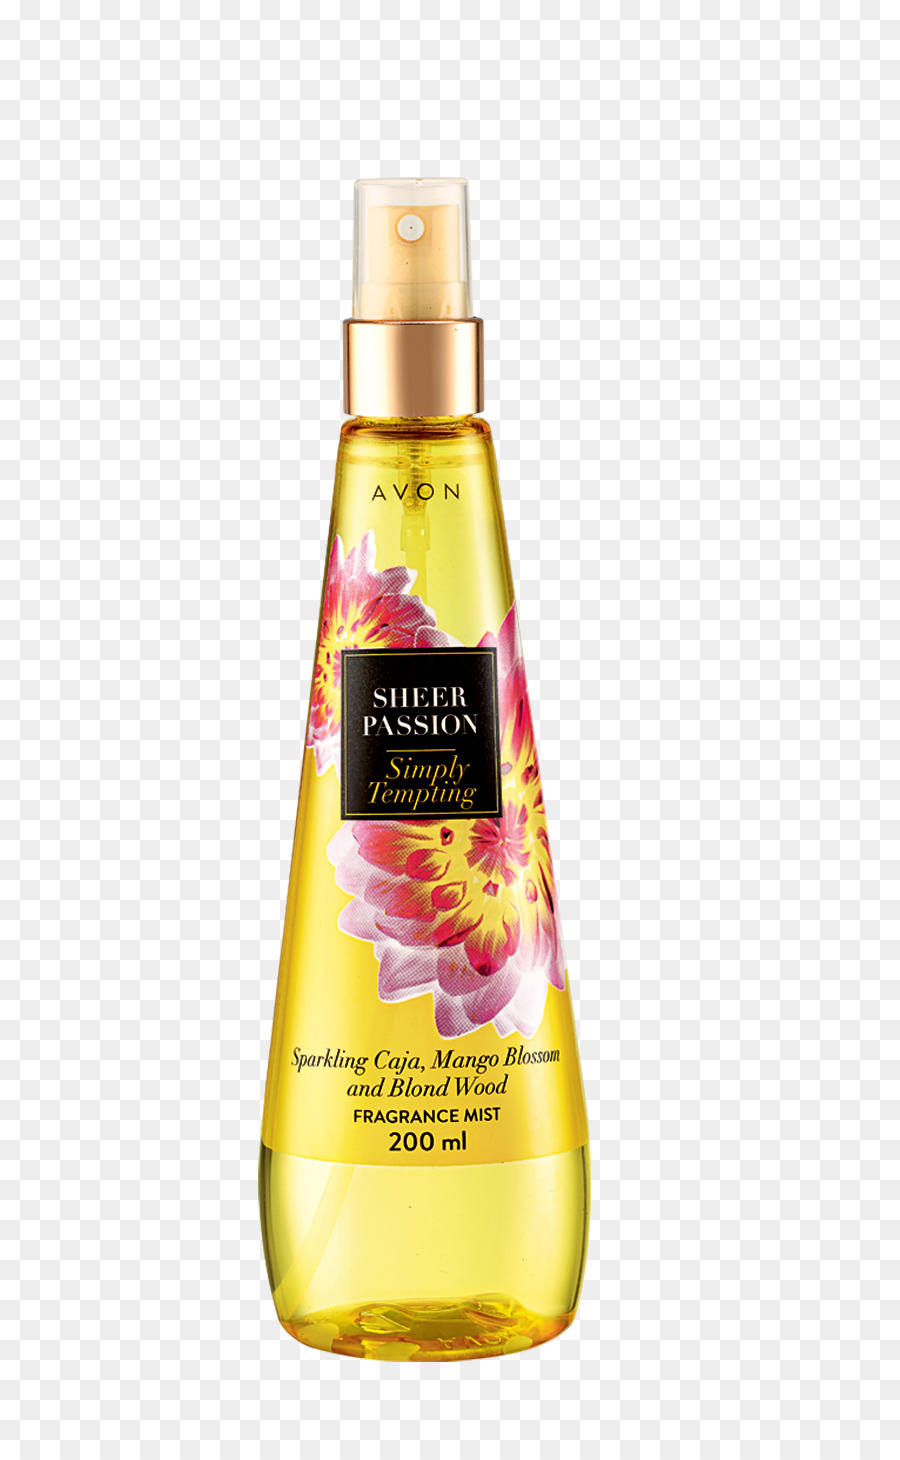 Profumo Avon Prodotti per il Corpo spray Eau de parfum Eau de Cologne - nebbia gialla